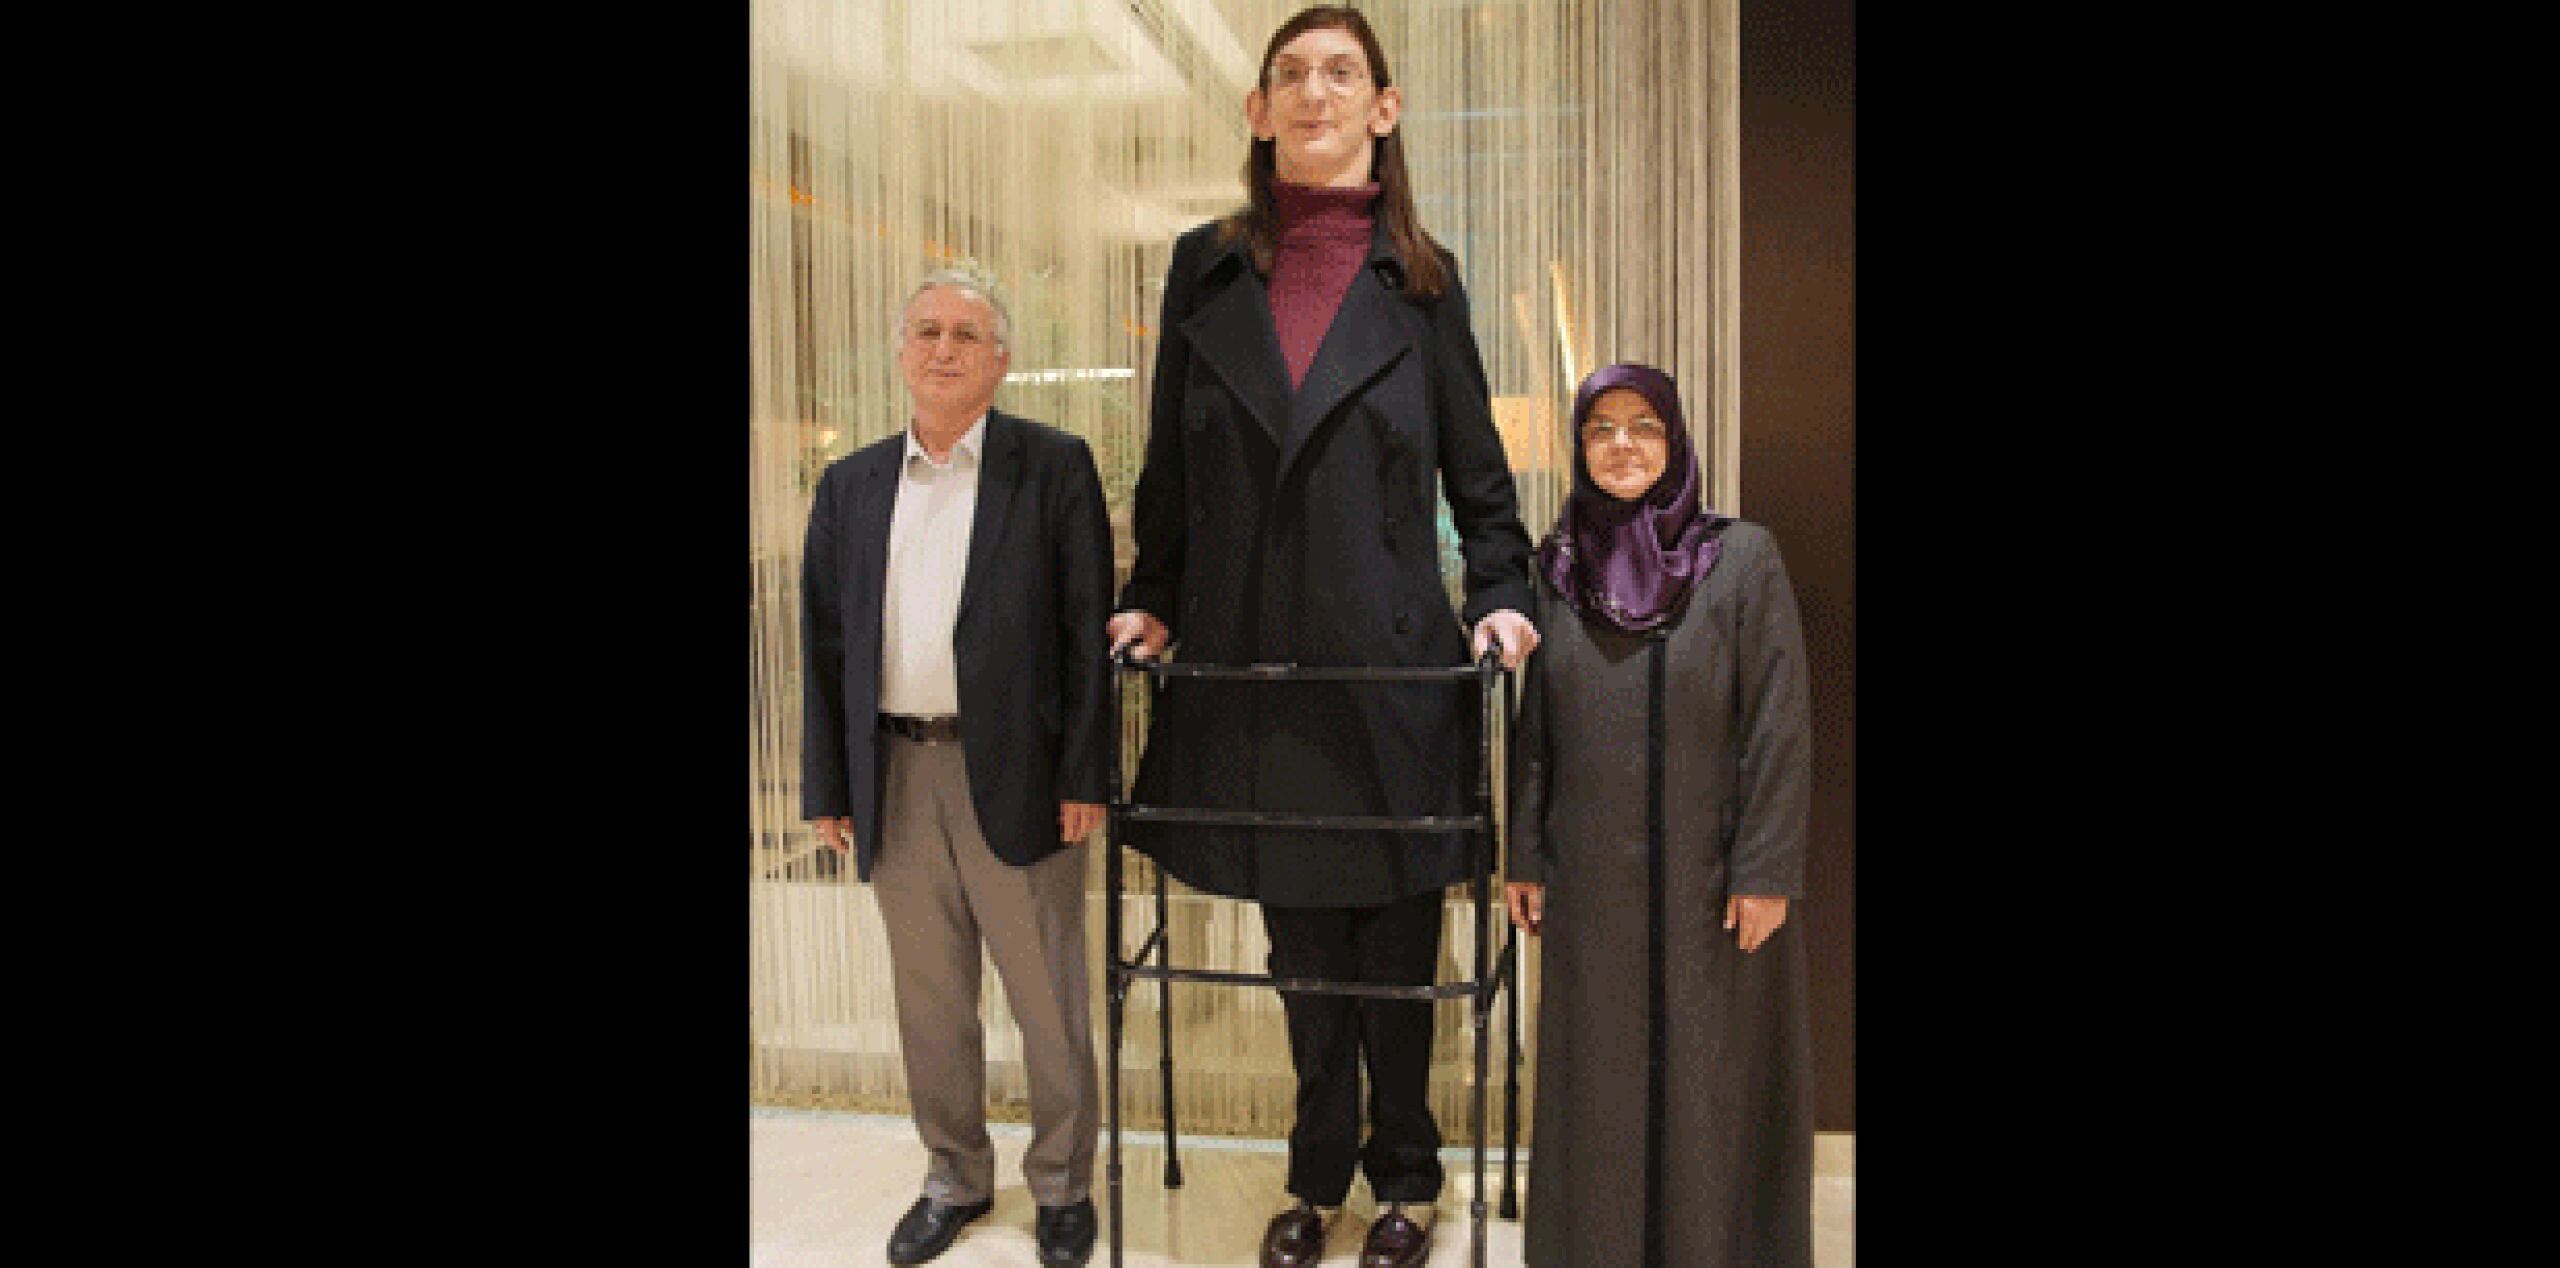 La joven – residente de la ciudad turca de Safranbolu- se debe a que padece del Síndrome de Weaver. (barcroft.tv)